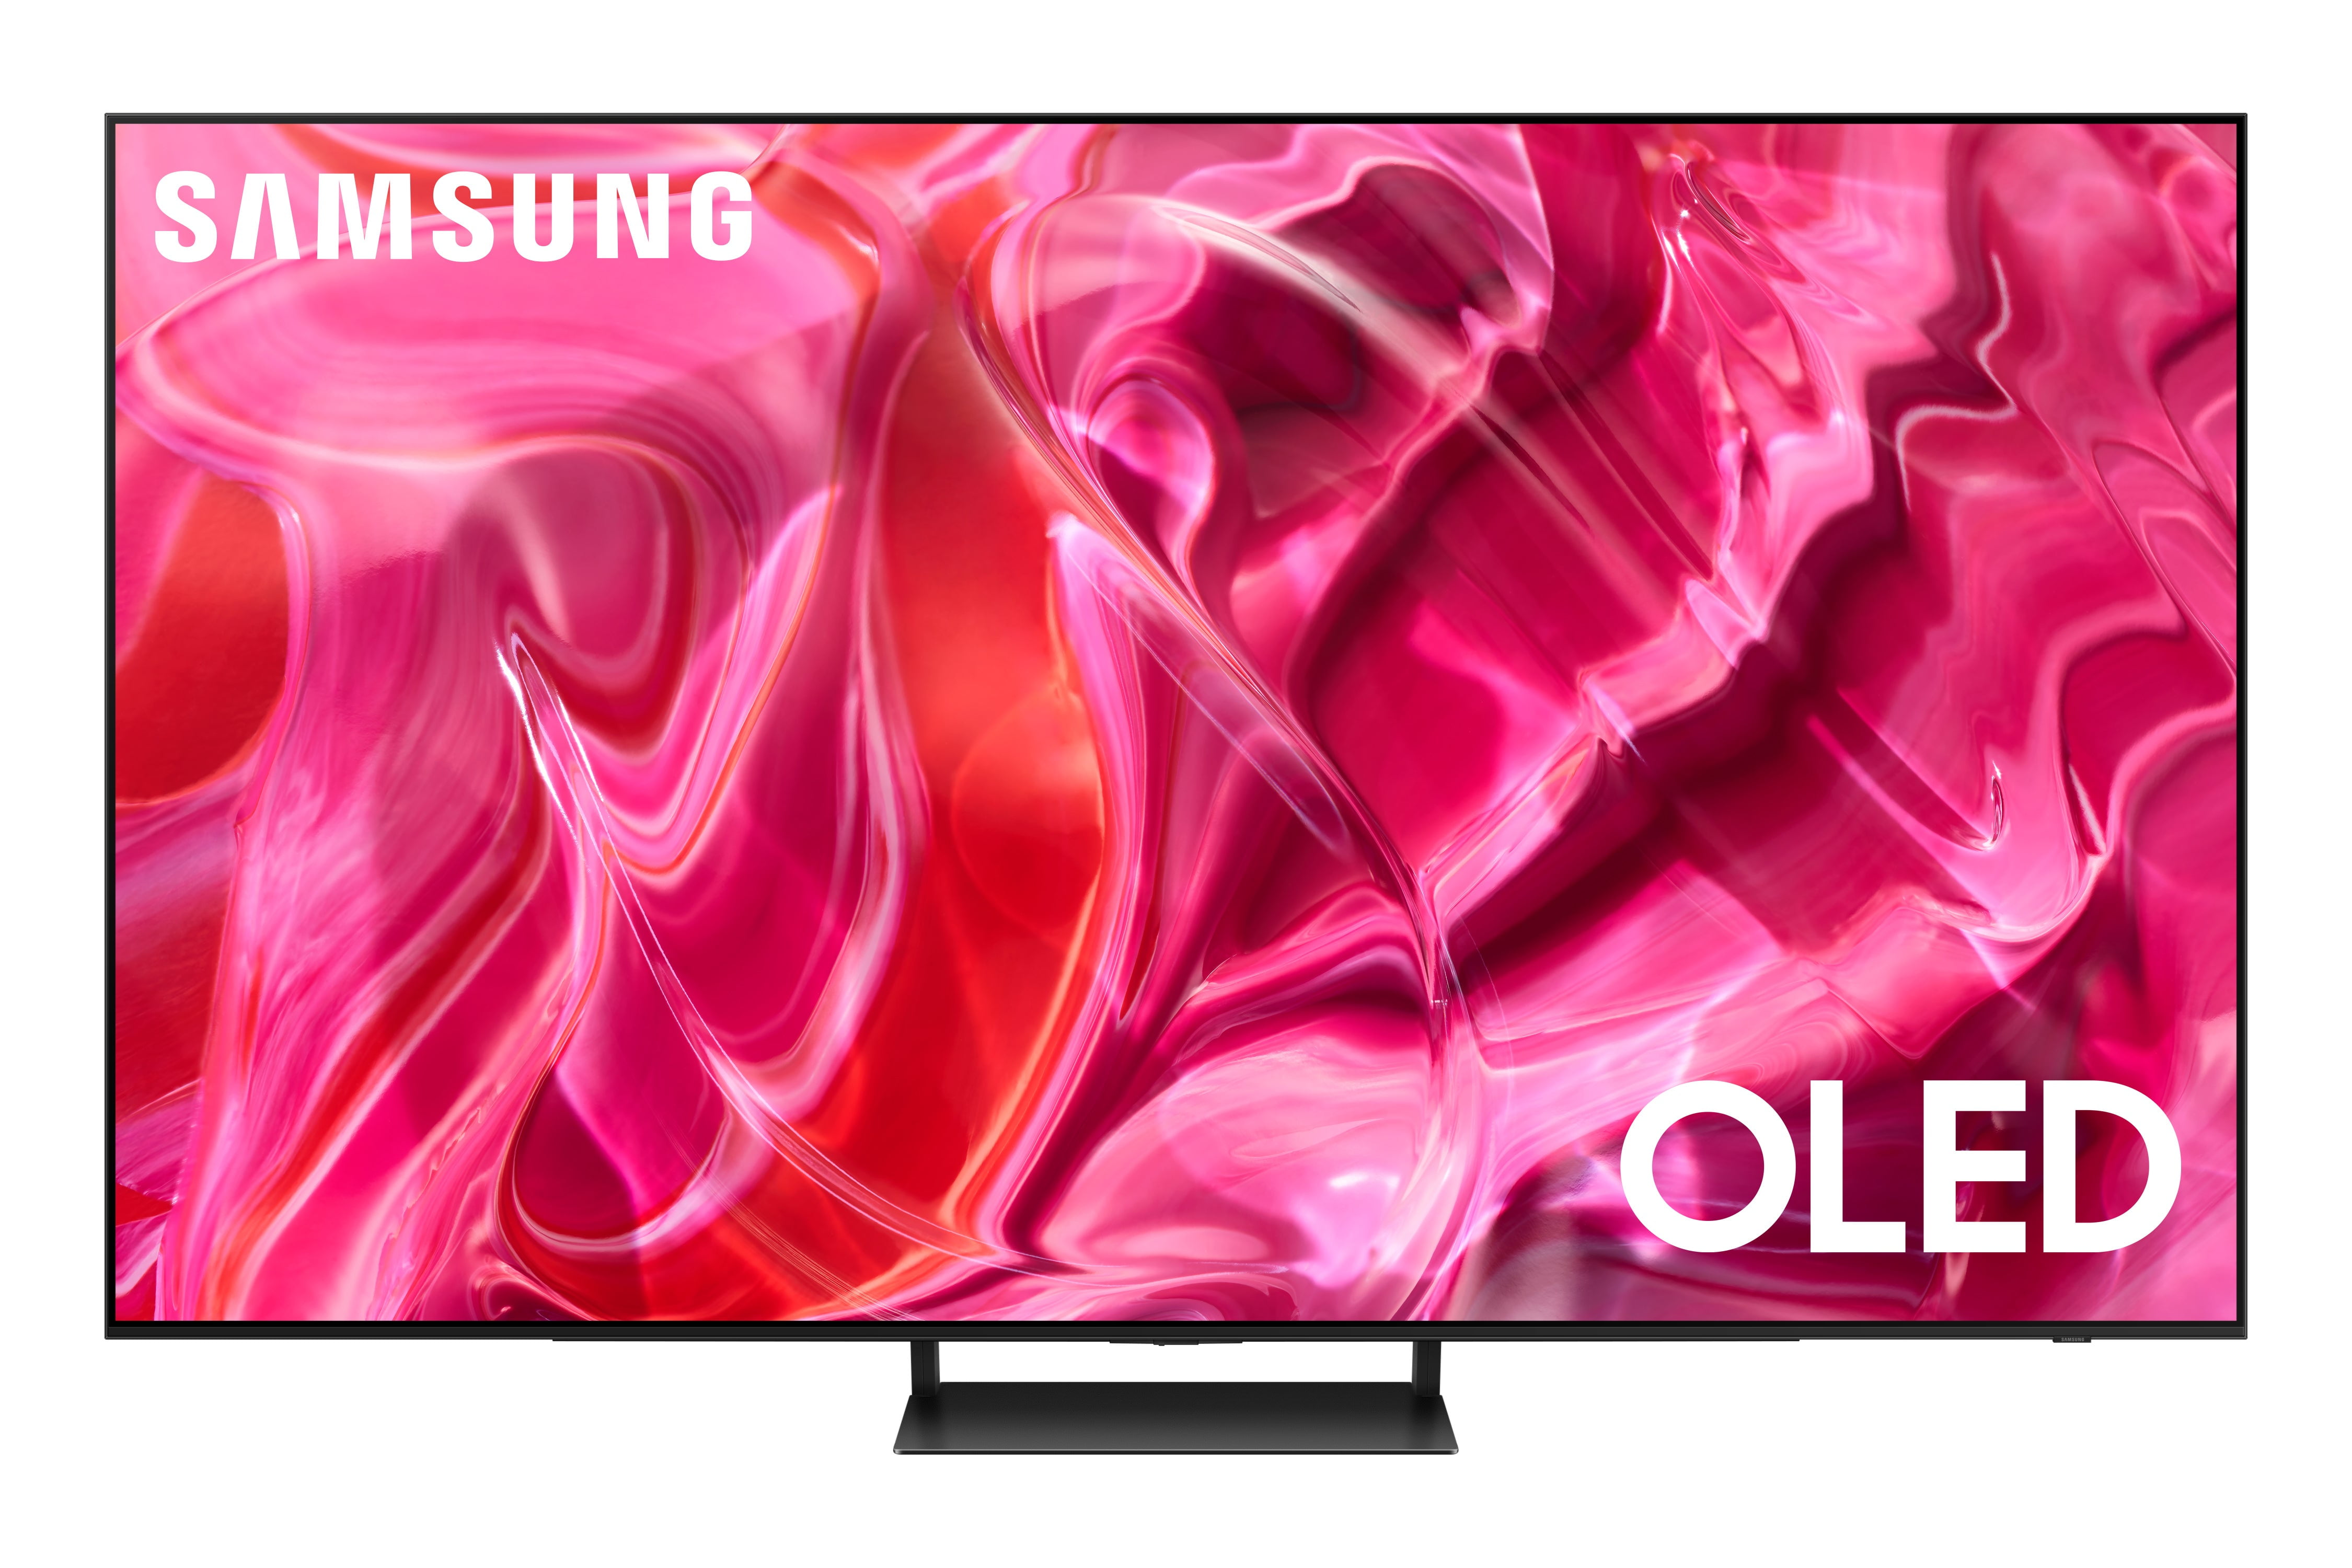 Pantalla Smart TV Samsung OLED de 55 pulgadas 4 K QN55S90CAFXZX con Tizen